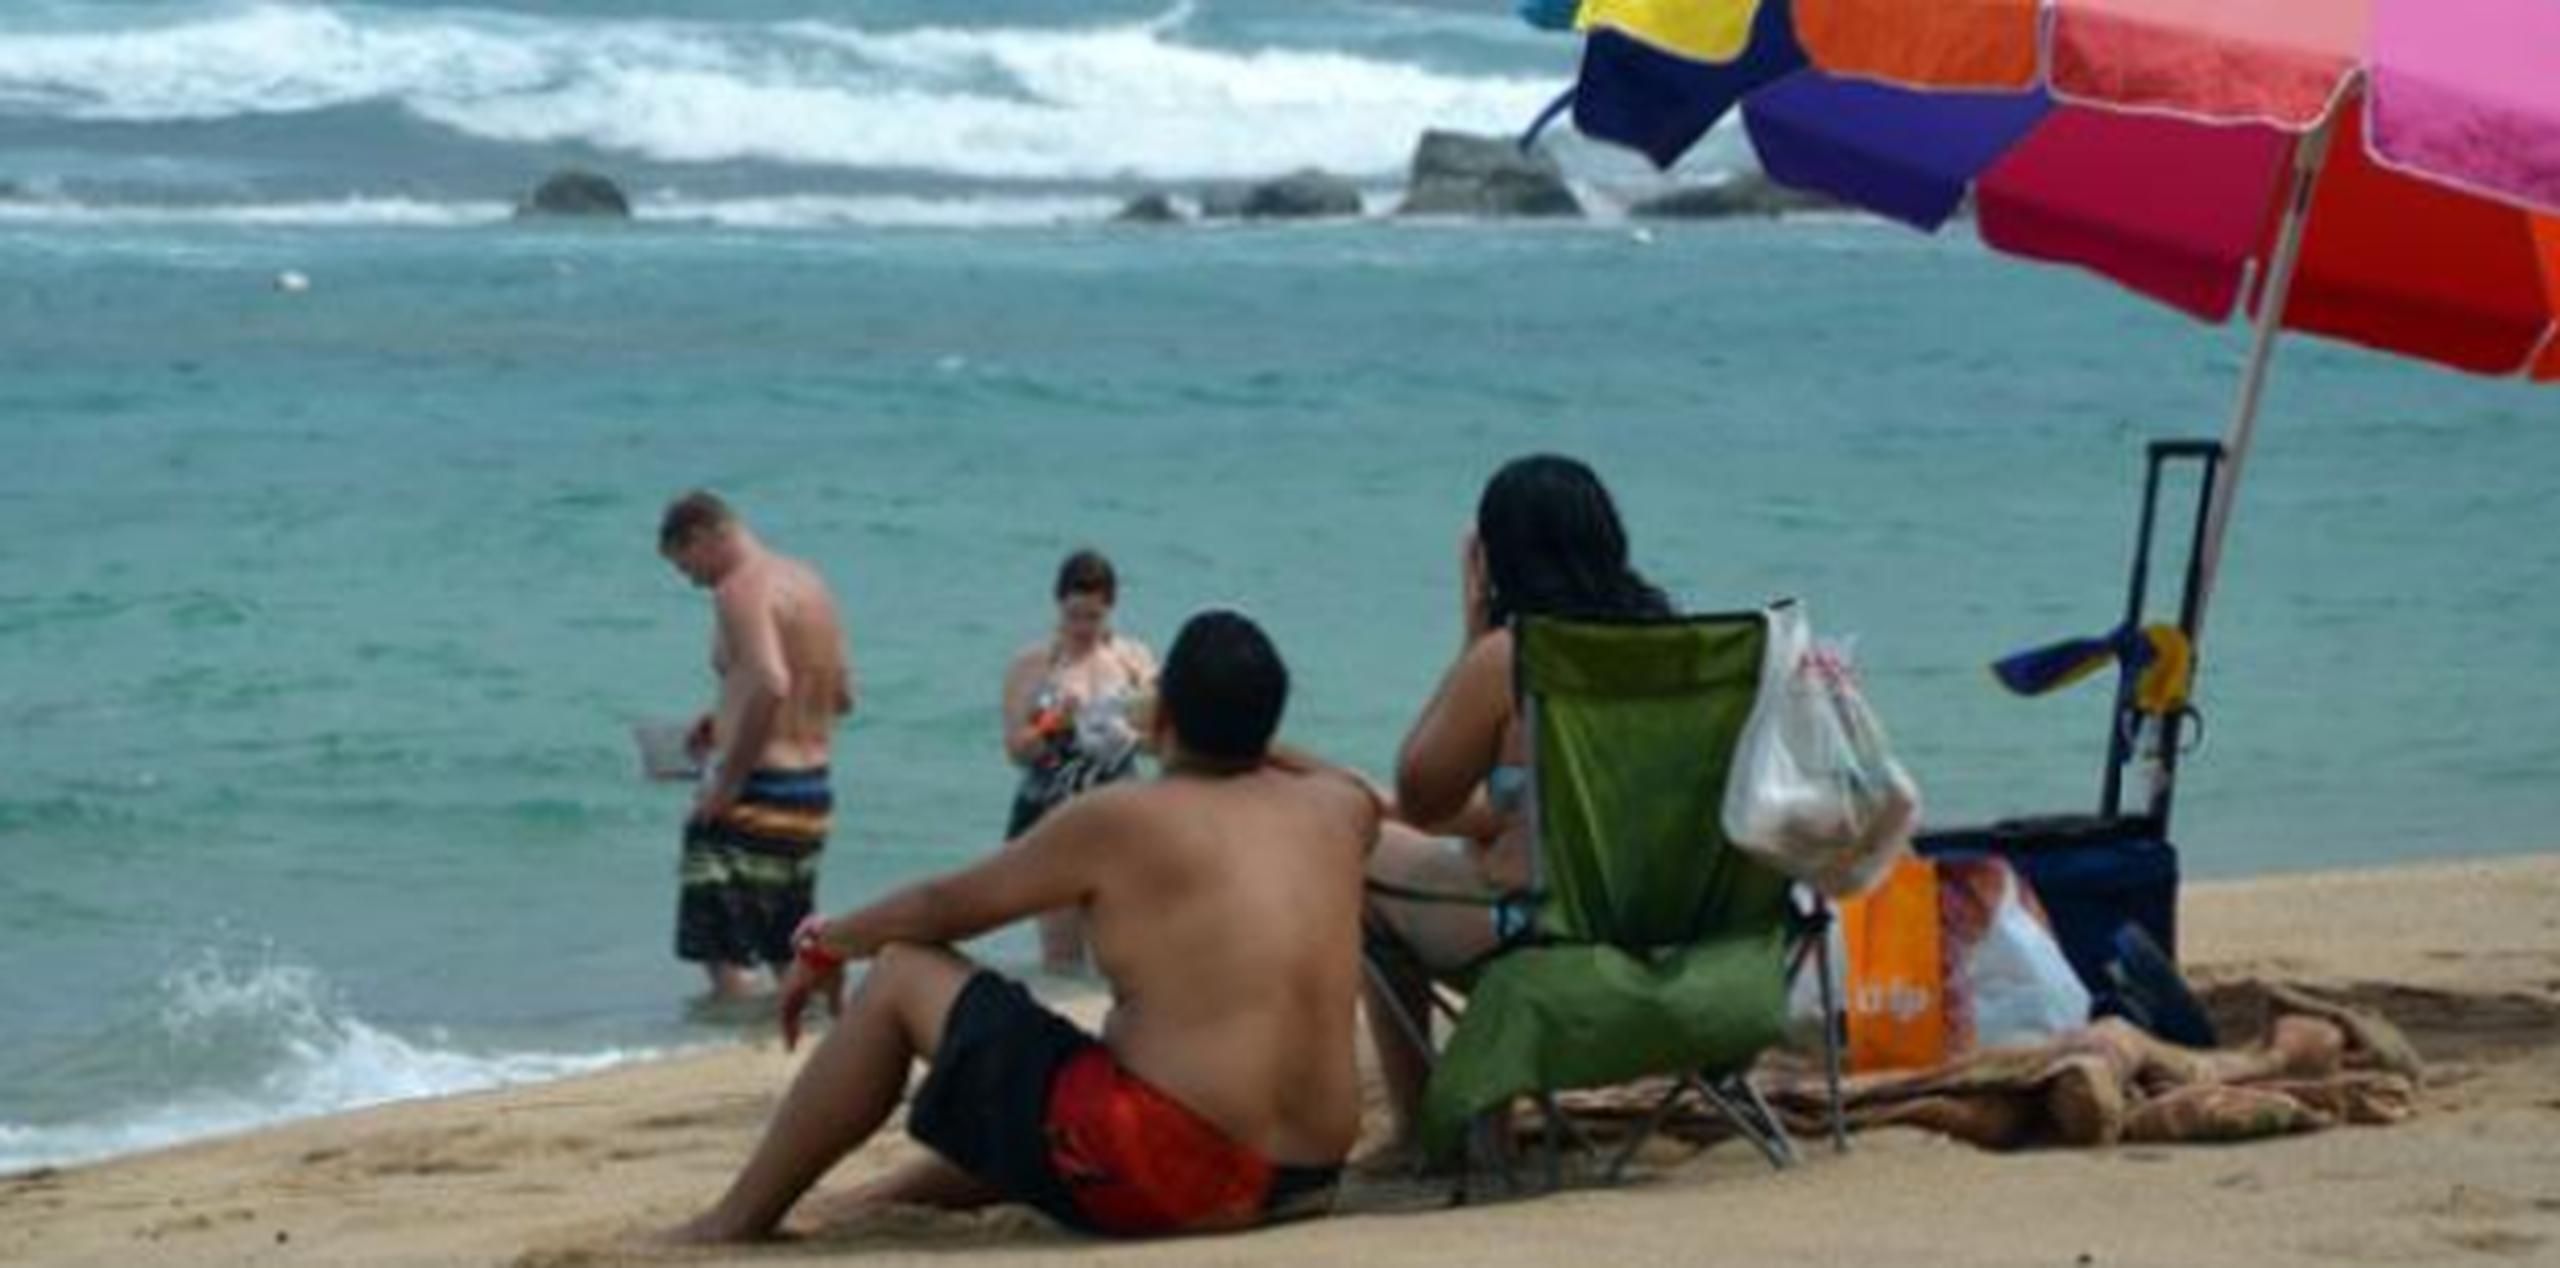 Se les exhorta a los bañistas y surfistas evitar las playas expuestas al Océano Atlántico y pasajes locales durante este evento de marejadas peligrosas. (Archivo)